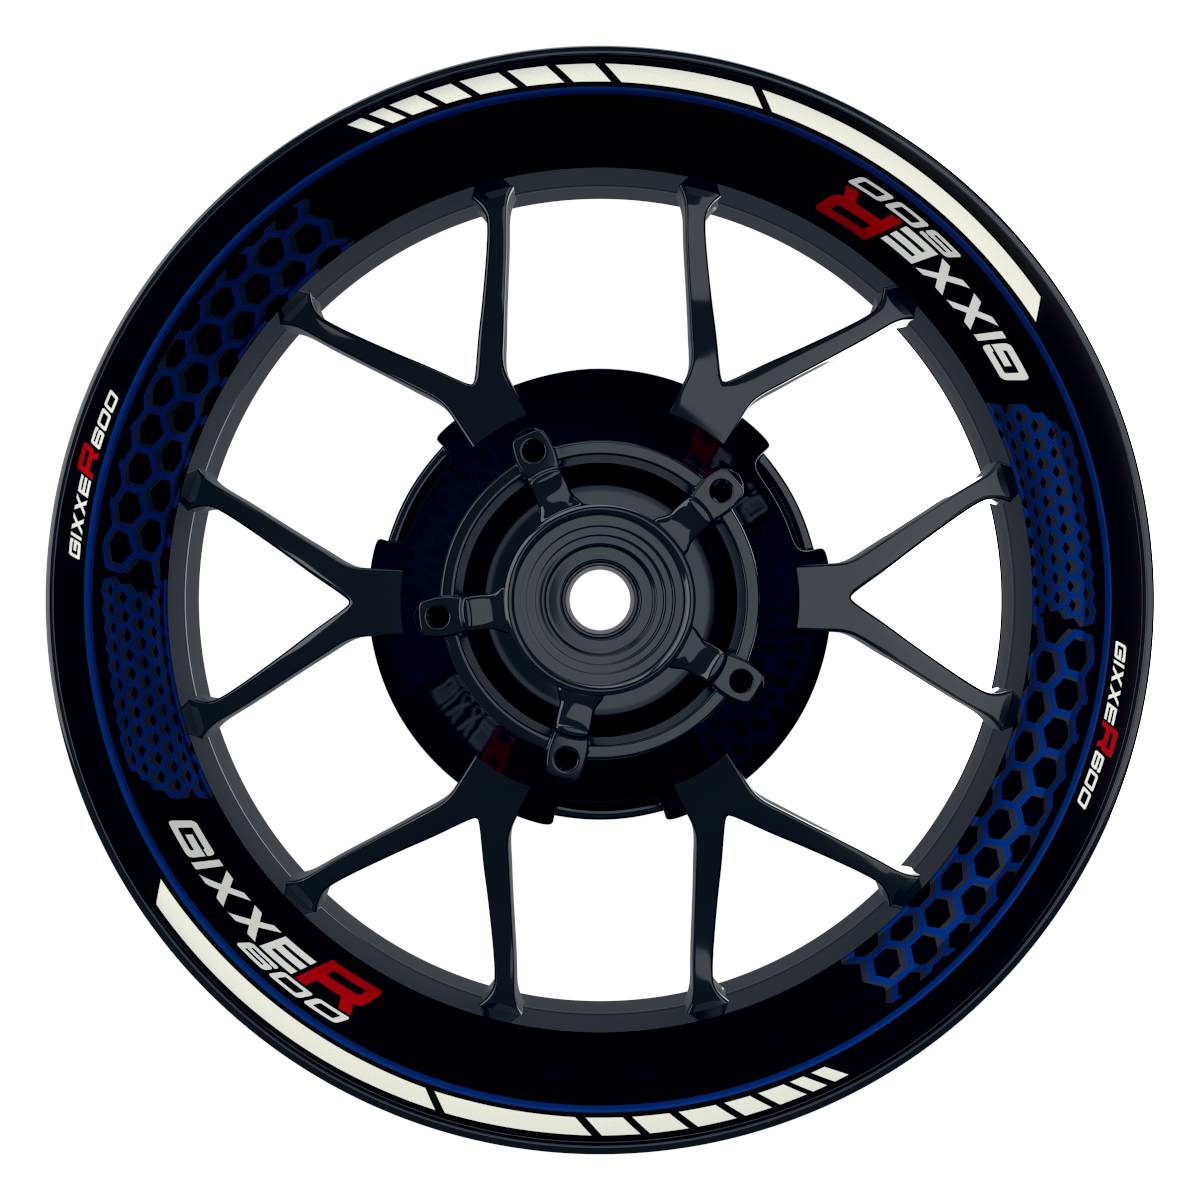 GIXXER600 Hexagon schwarz blau Wheelsticker Felgenaufkleber